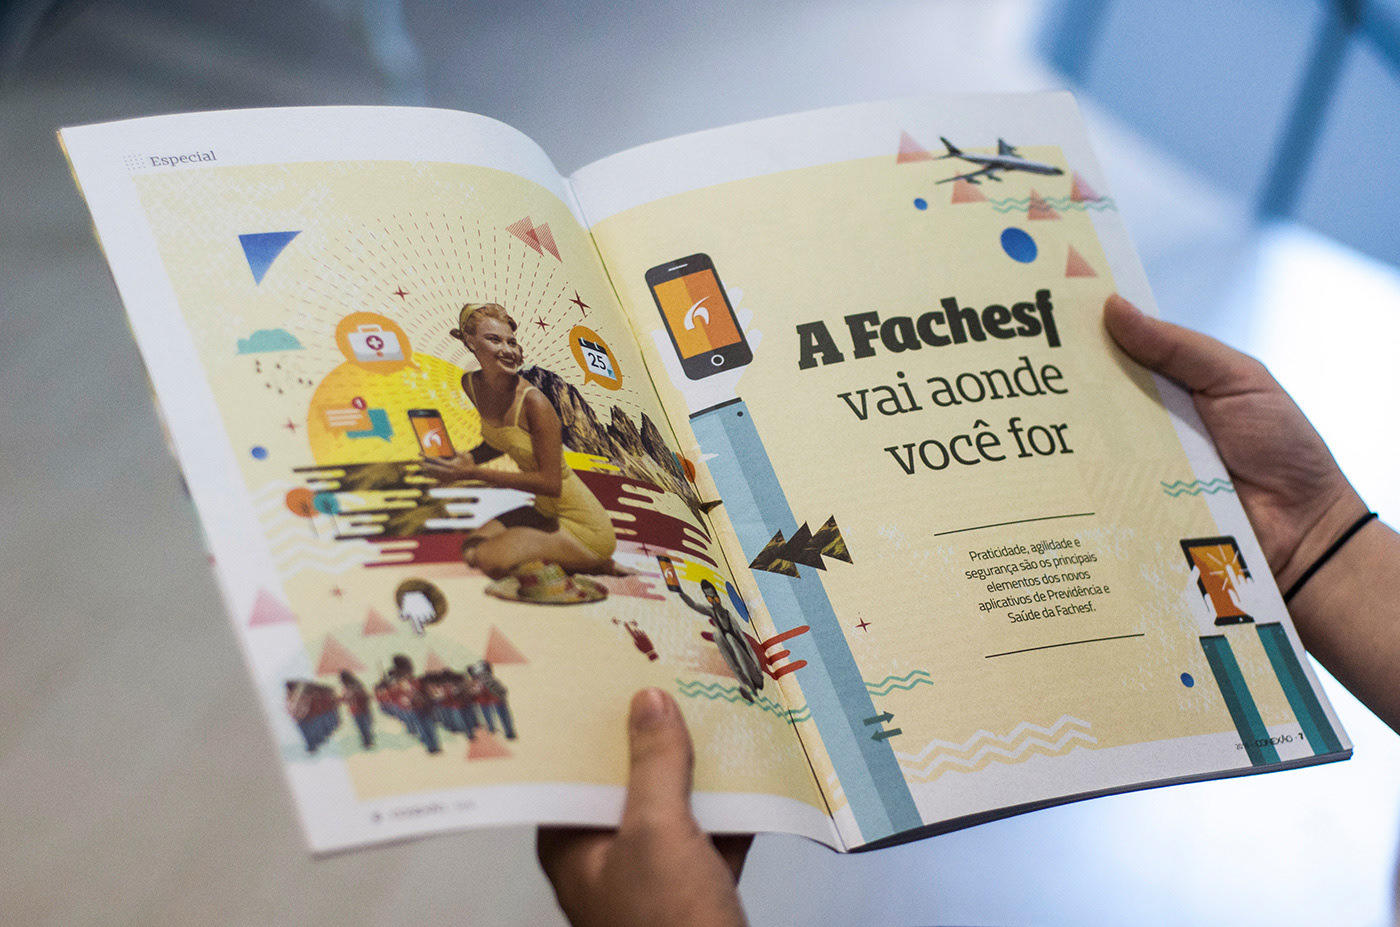 editorial Fachesf conexão fachesf revista magazine mag design ilustras ilustrações